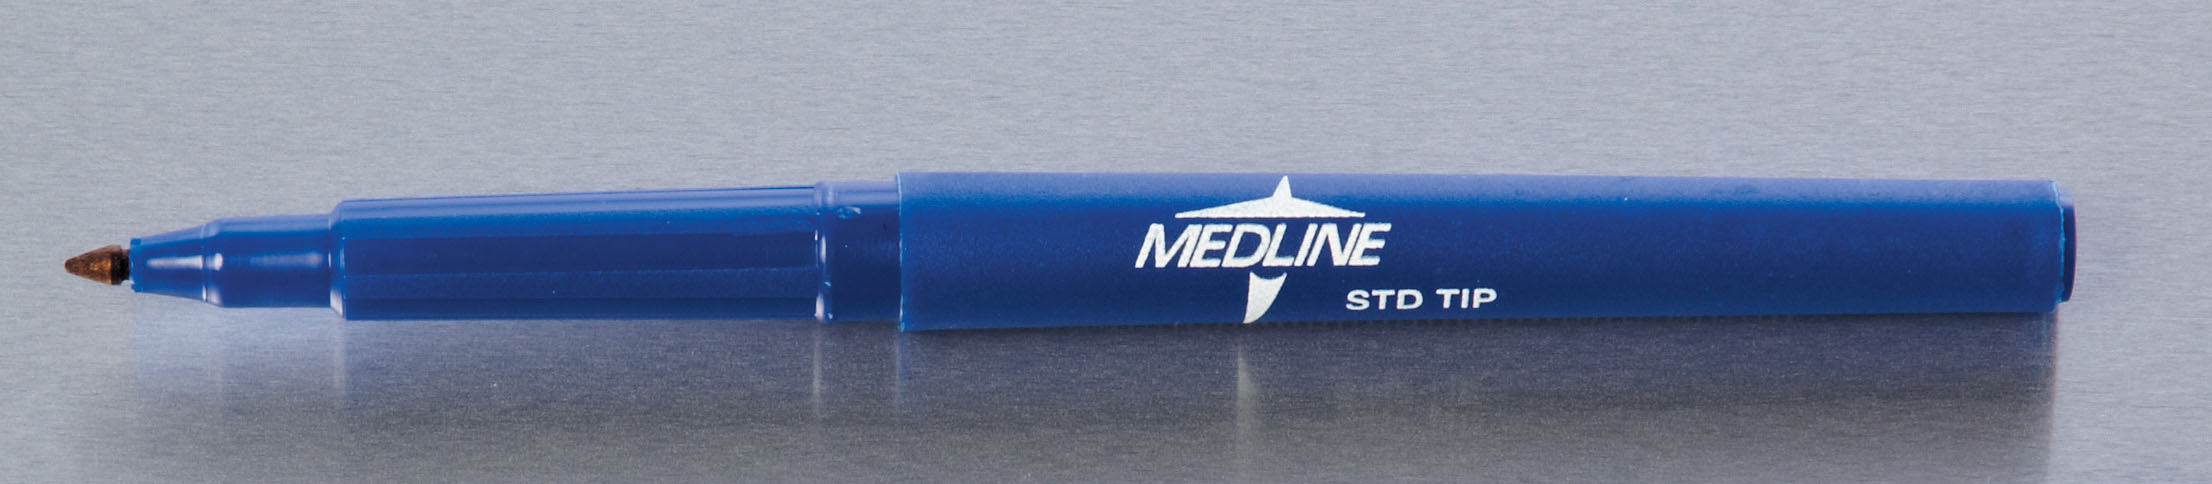 Medline Surgical Skin Marker with Gentian Violet Ink, Regular Tip, Sterile - Includes 6 Inch Ruler (50/CS)